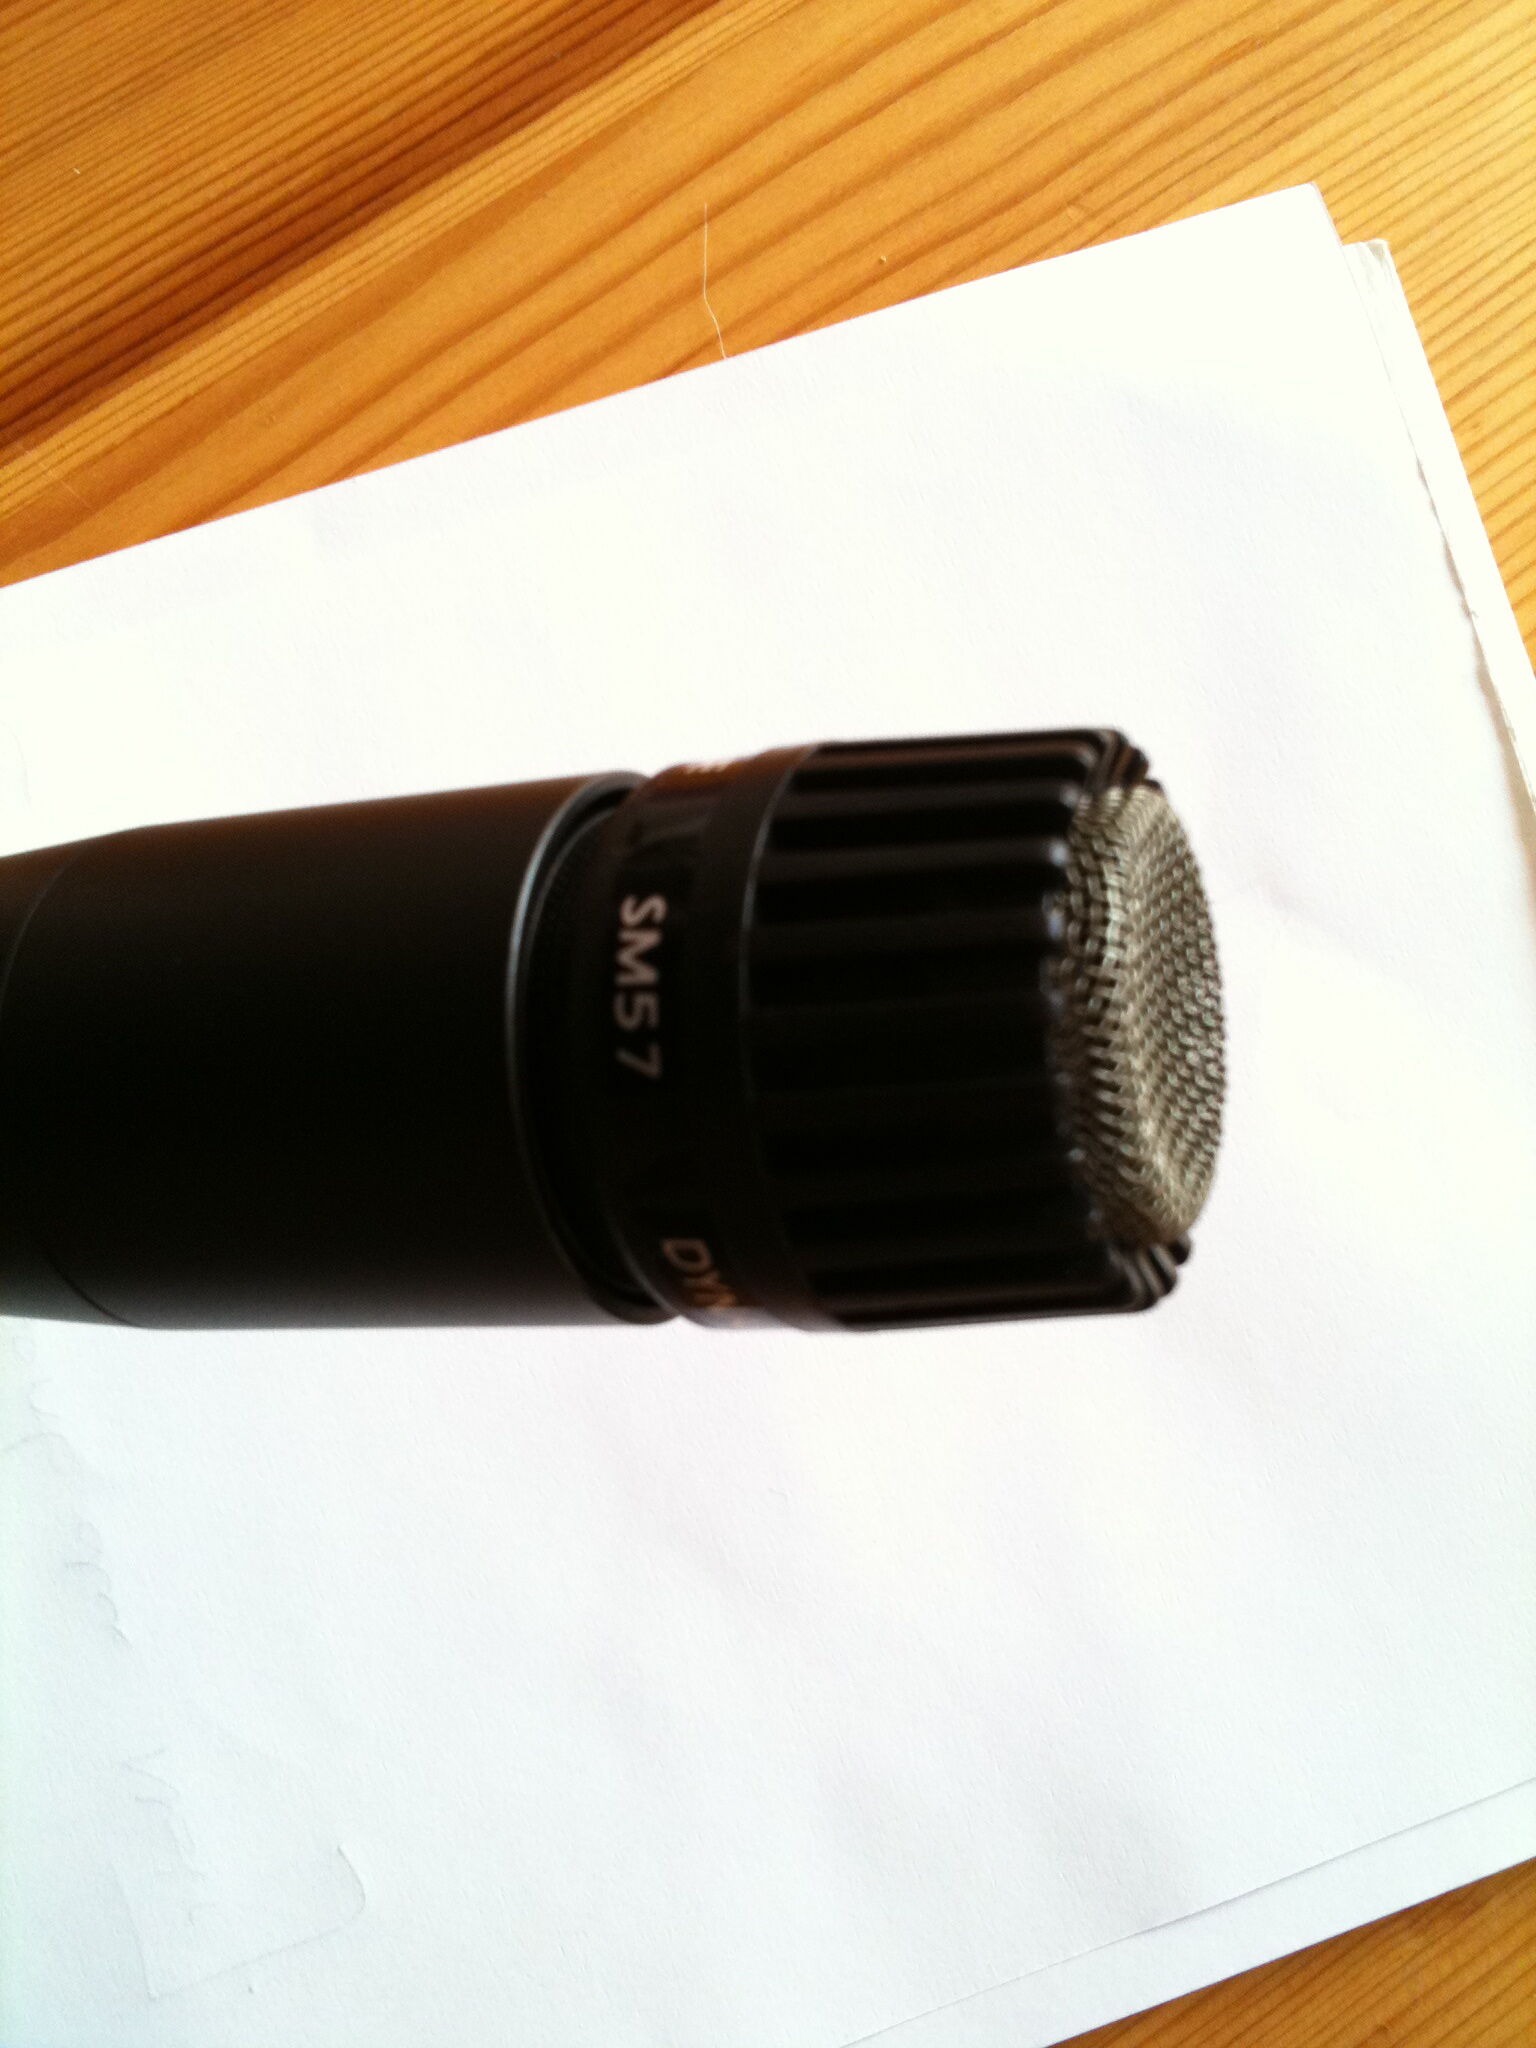 Prodipe Mc1-lanen Micro Chant Dynamique Unidirectionnel Microphone  Dynamique 